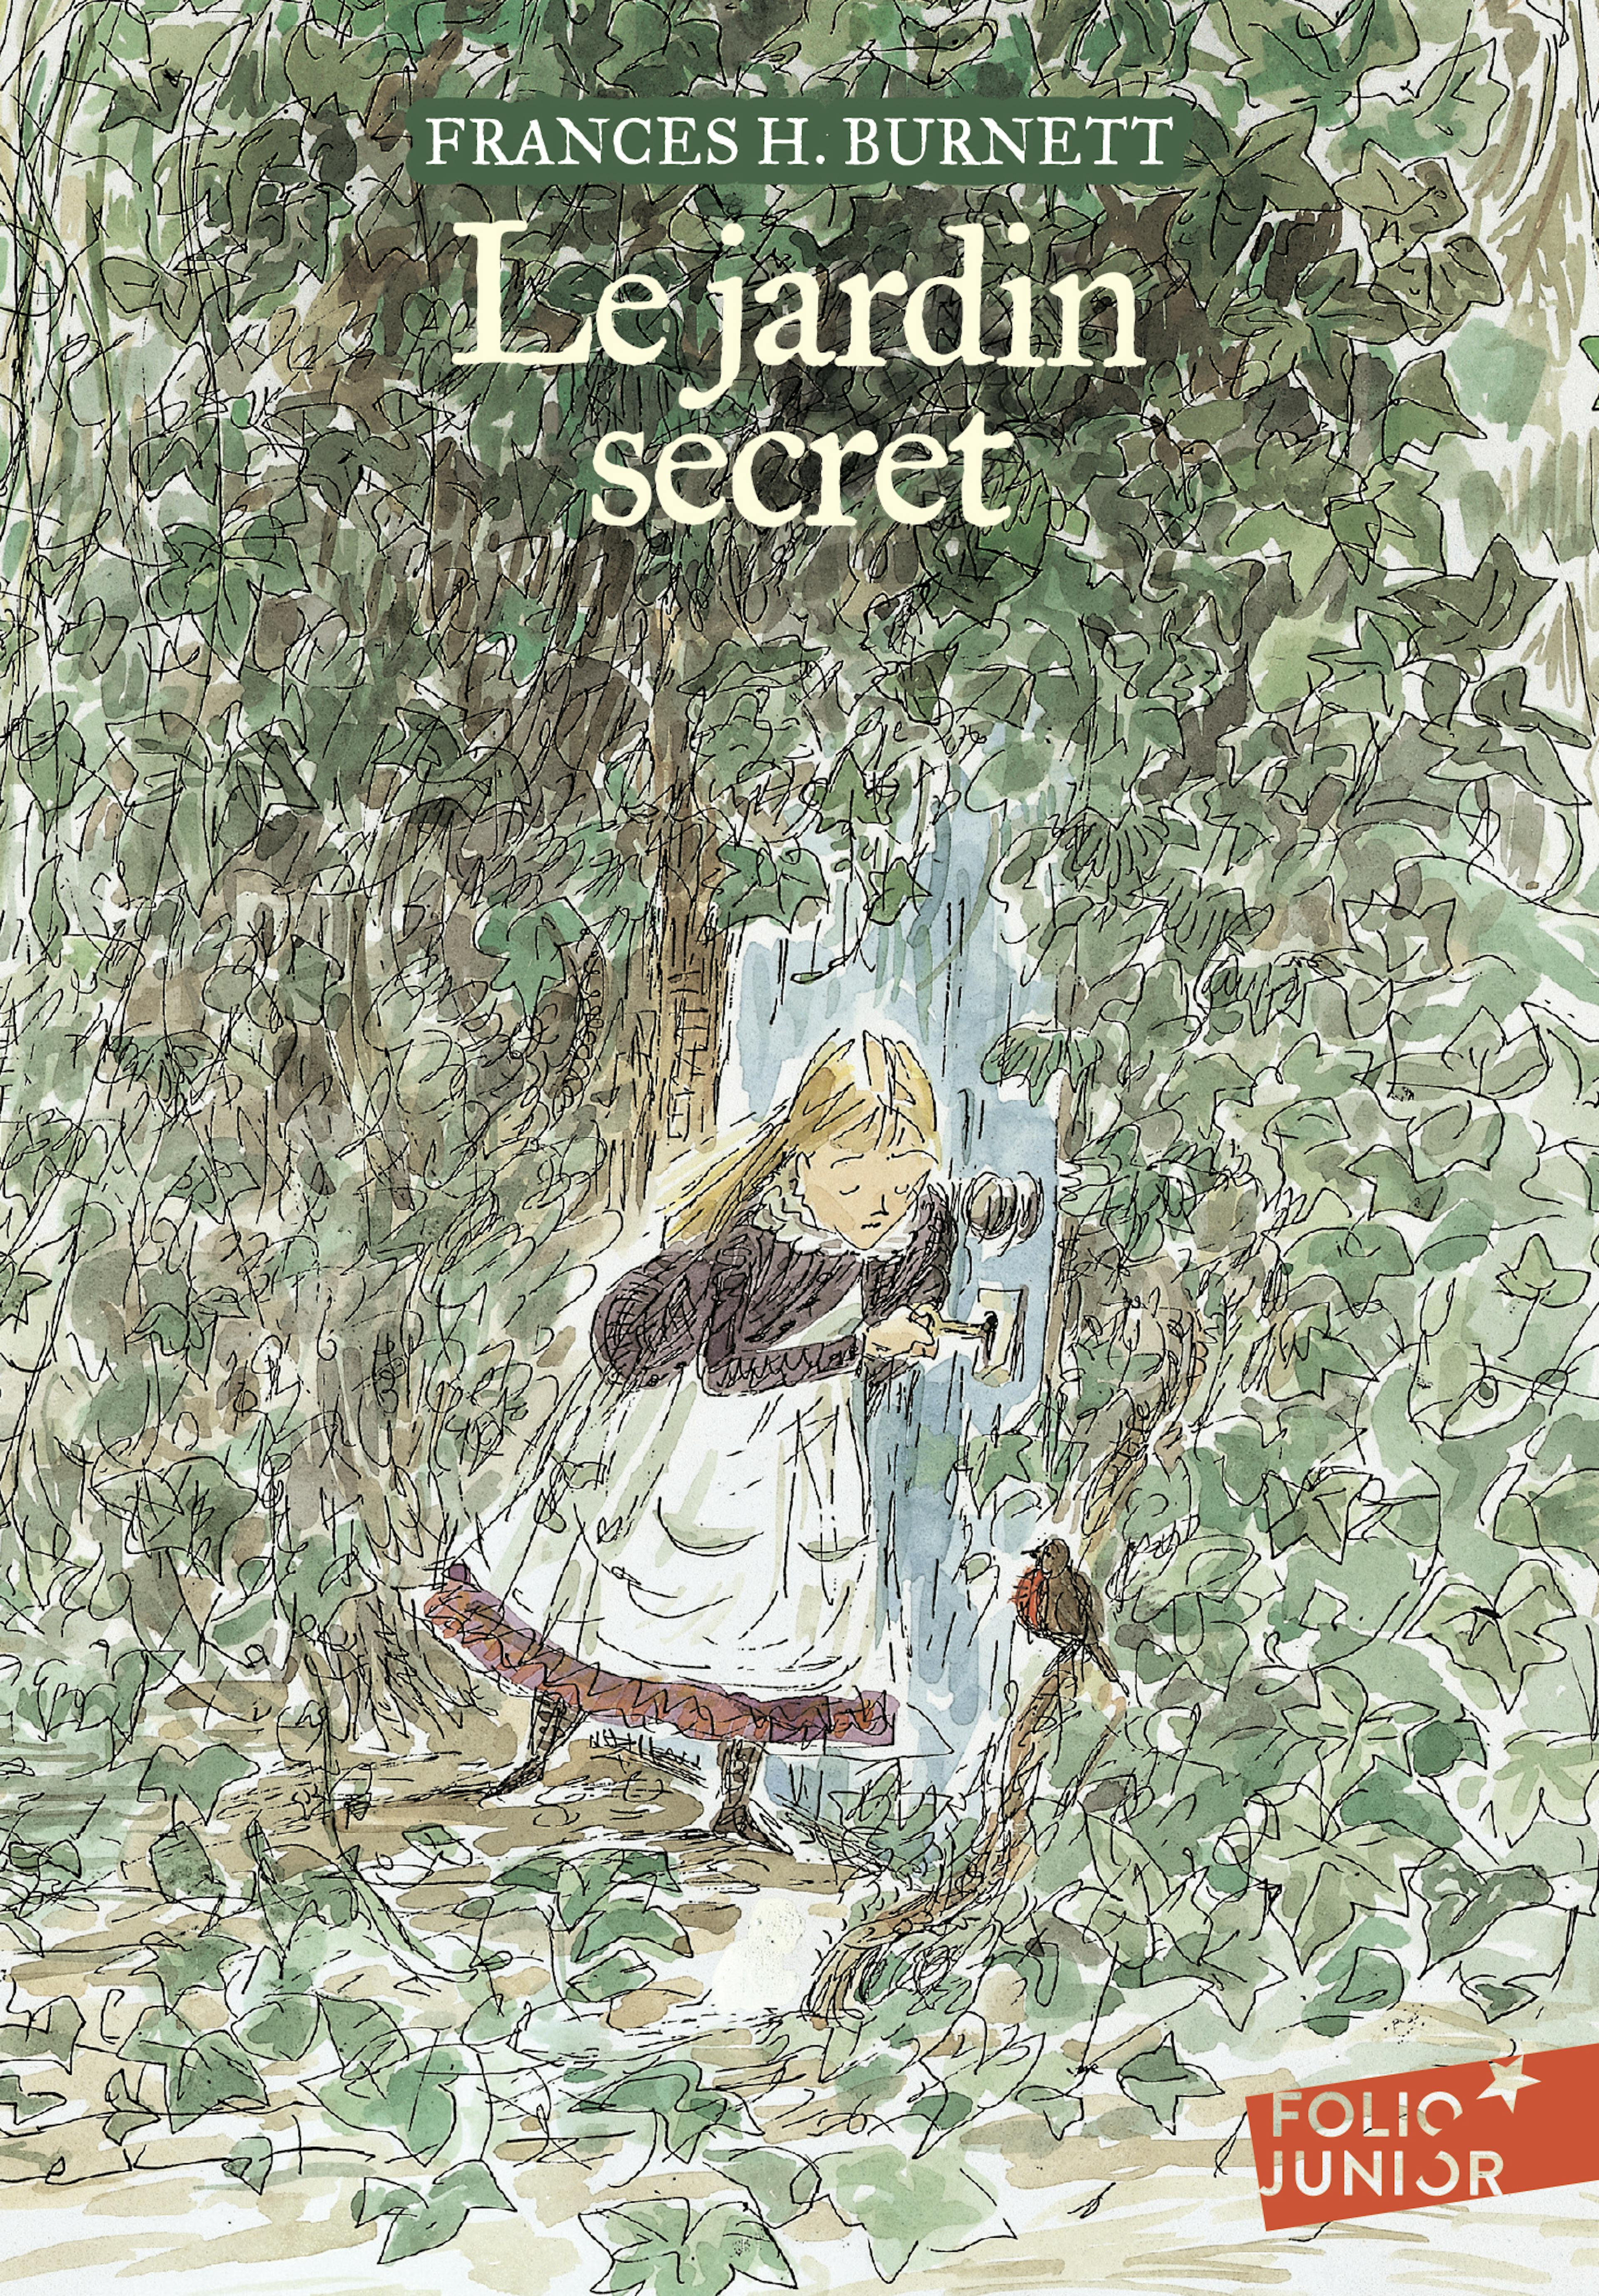 Couverture du roman "Le Jardin Secret" de Frances H. Burnett